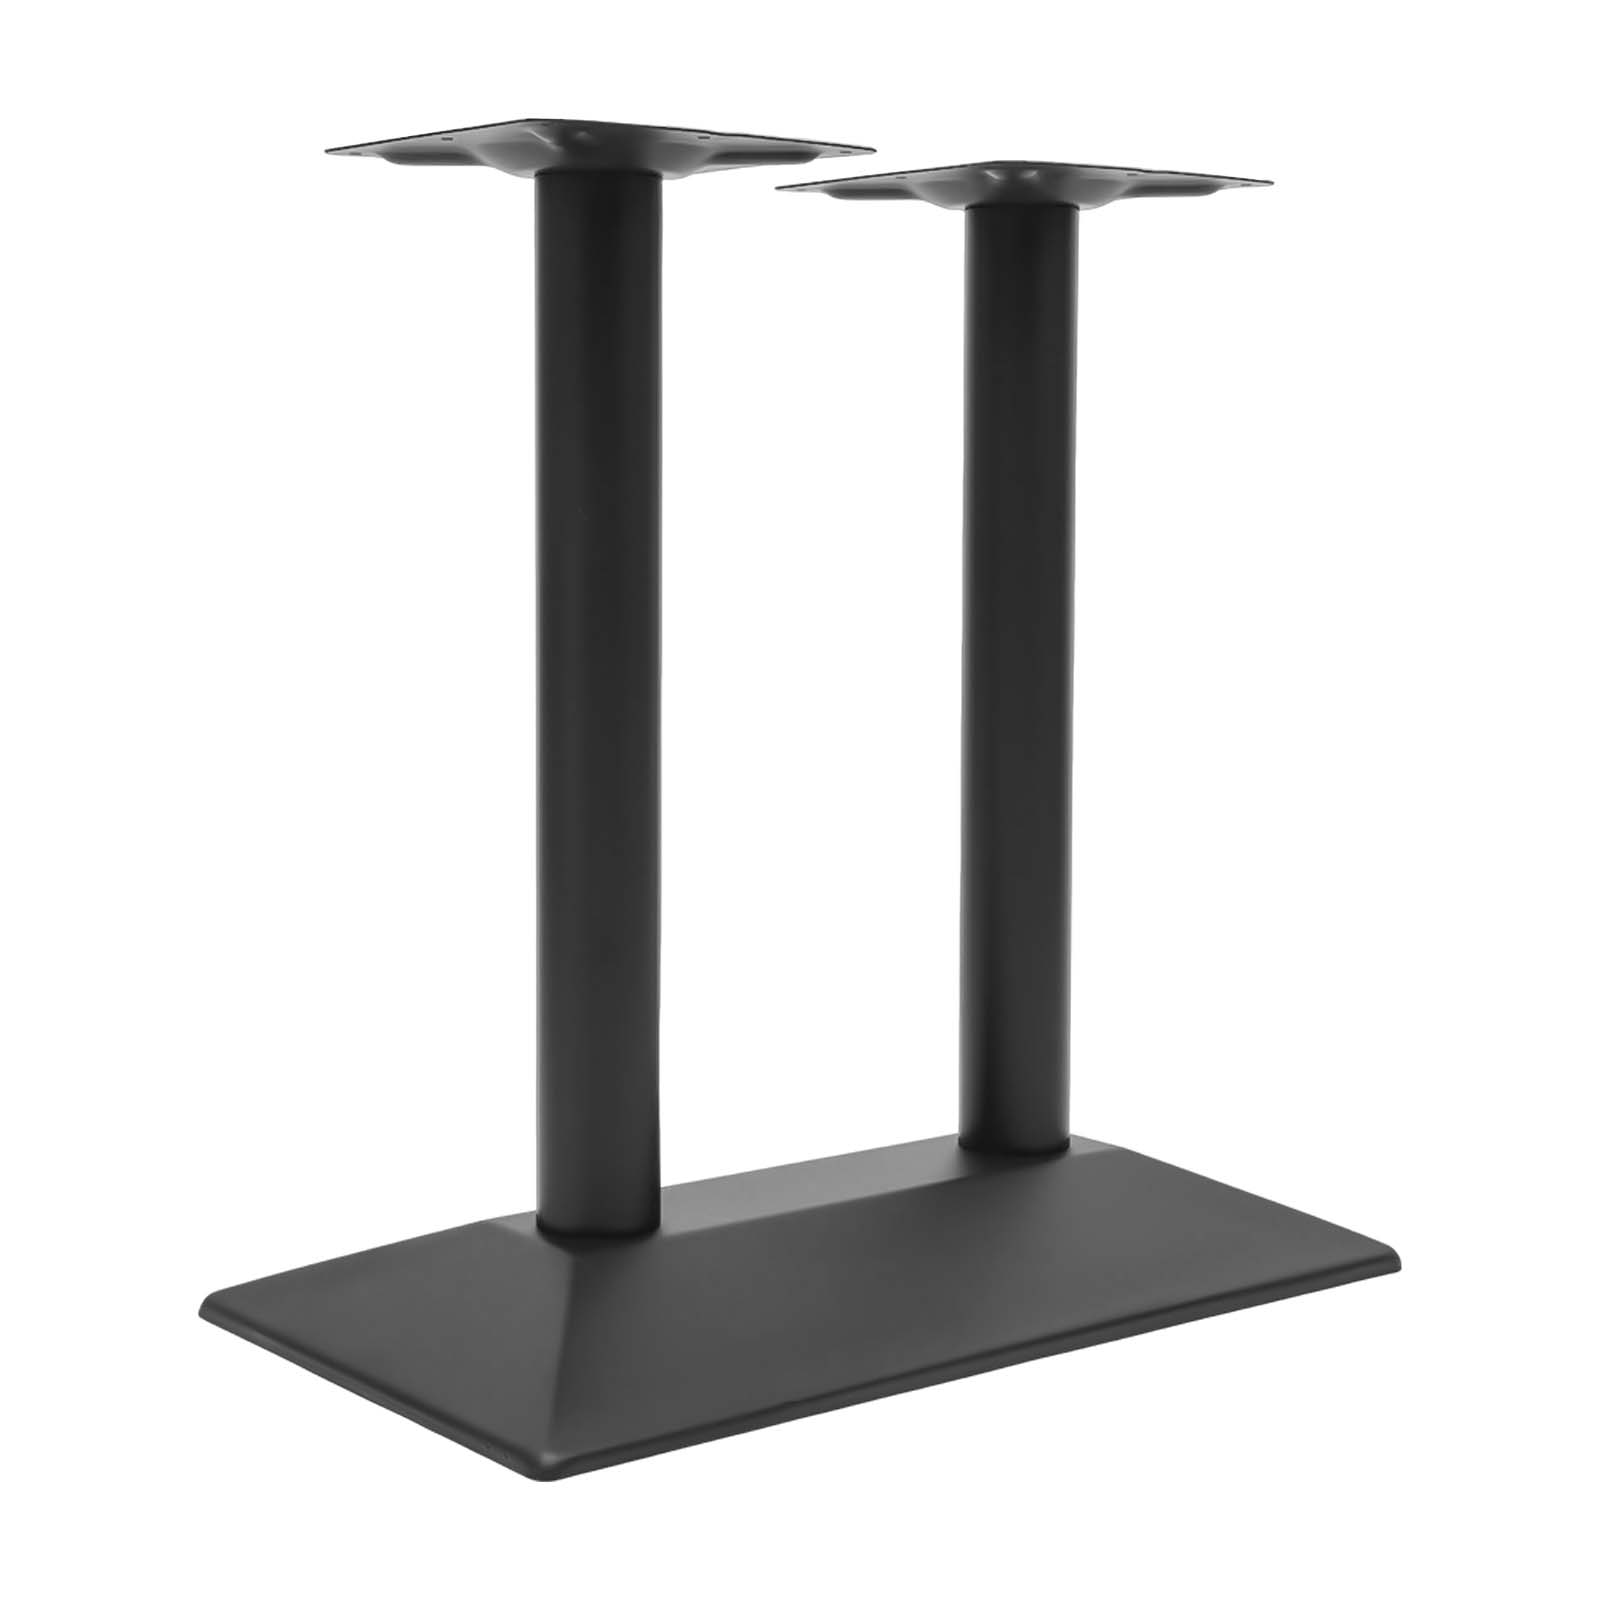 Gamba del tavolo Struttura del tavolo da bar in metallo nero, altezza 72cm